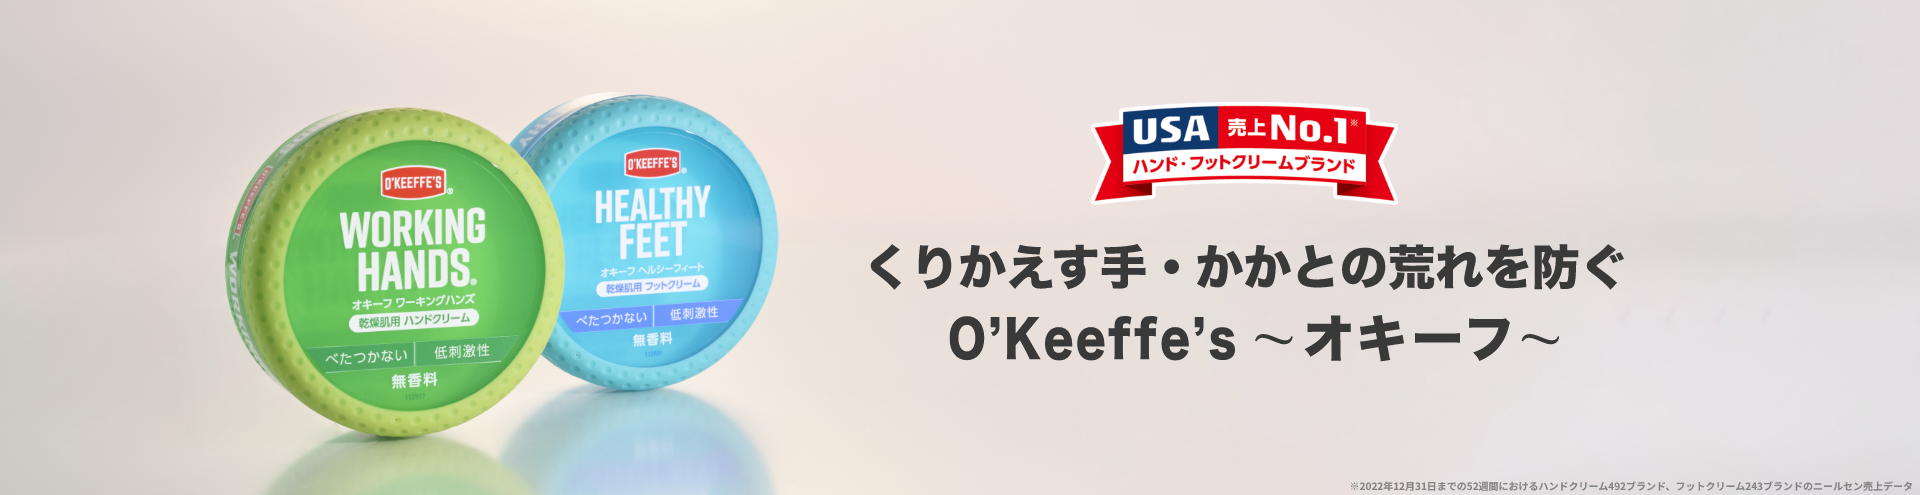 オキーフ[O'Keeffe's] 呉工業株式会社